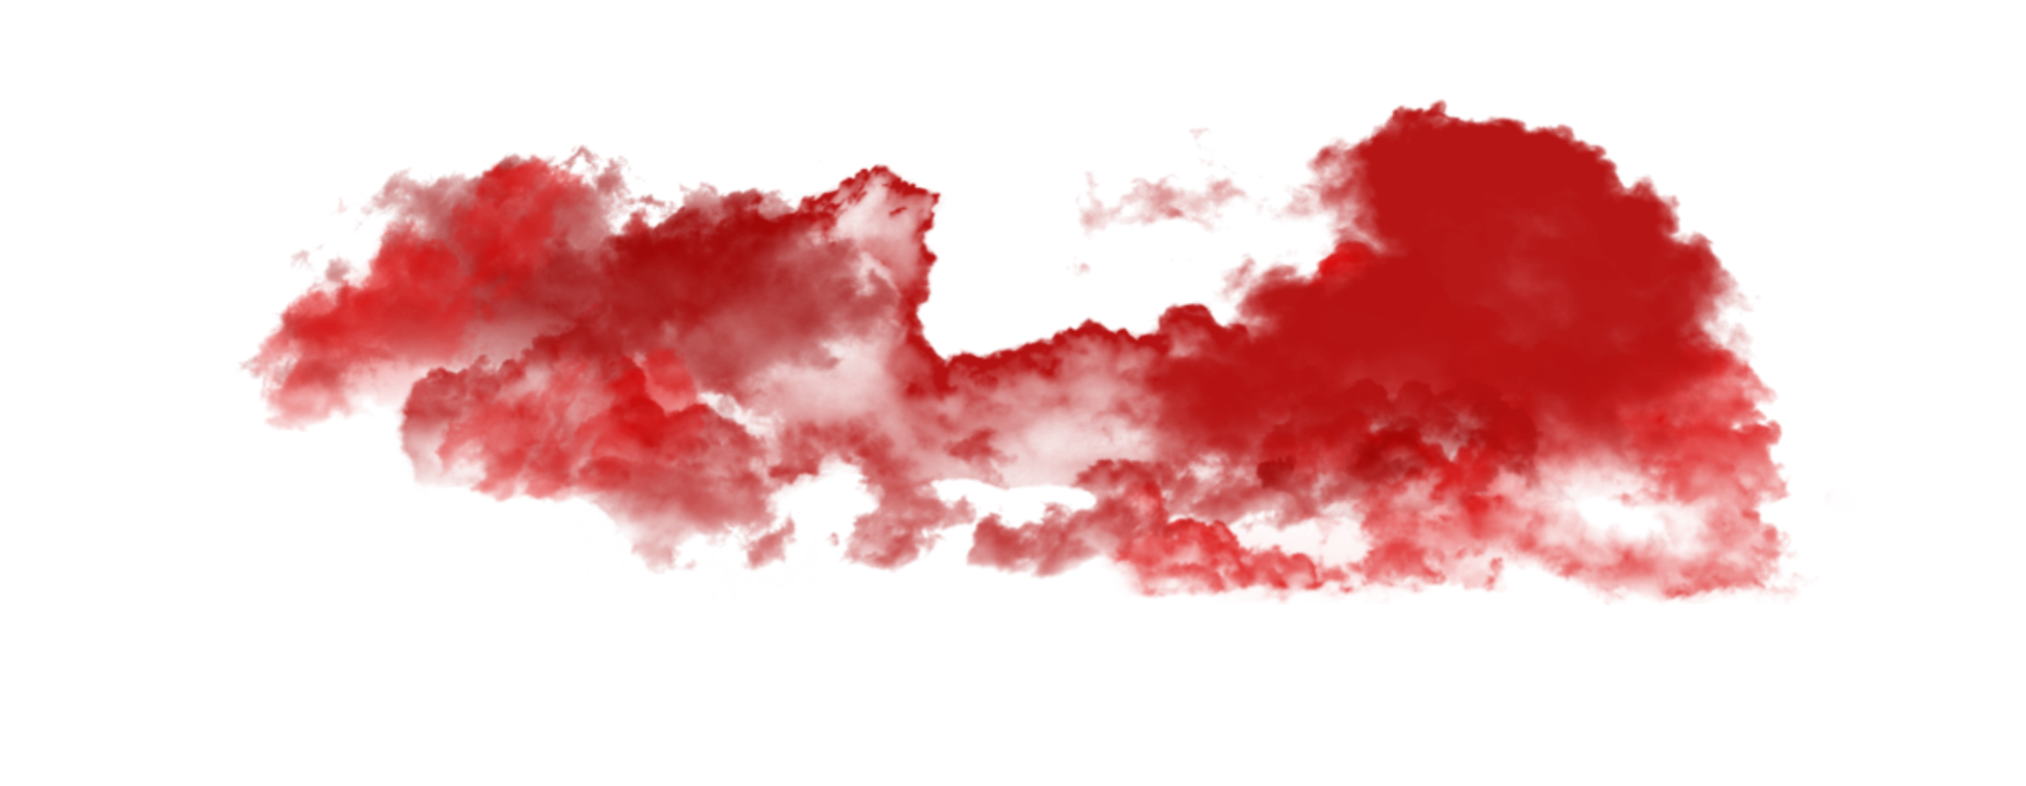 Image de PNG de fumée rouge